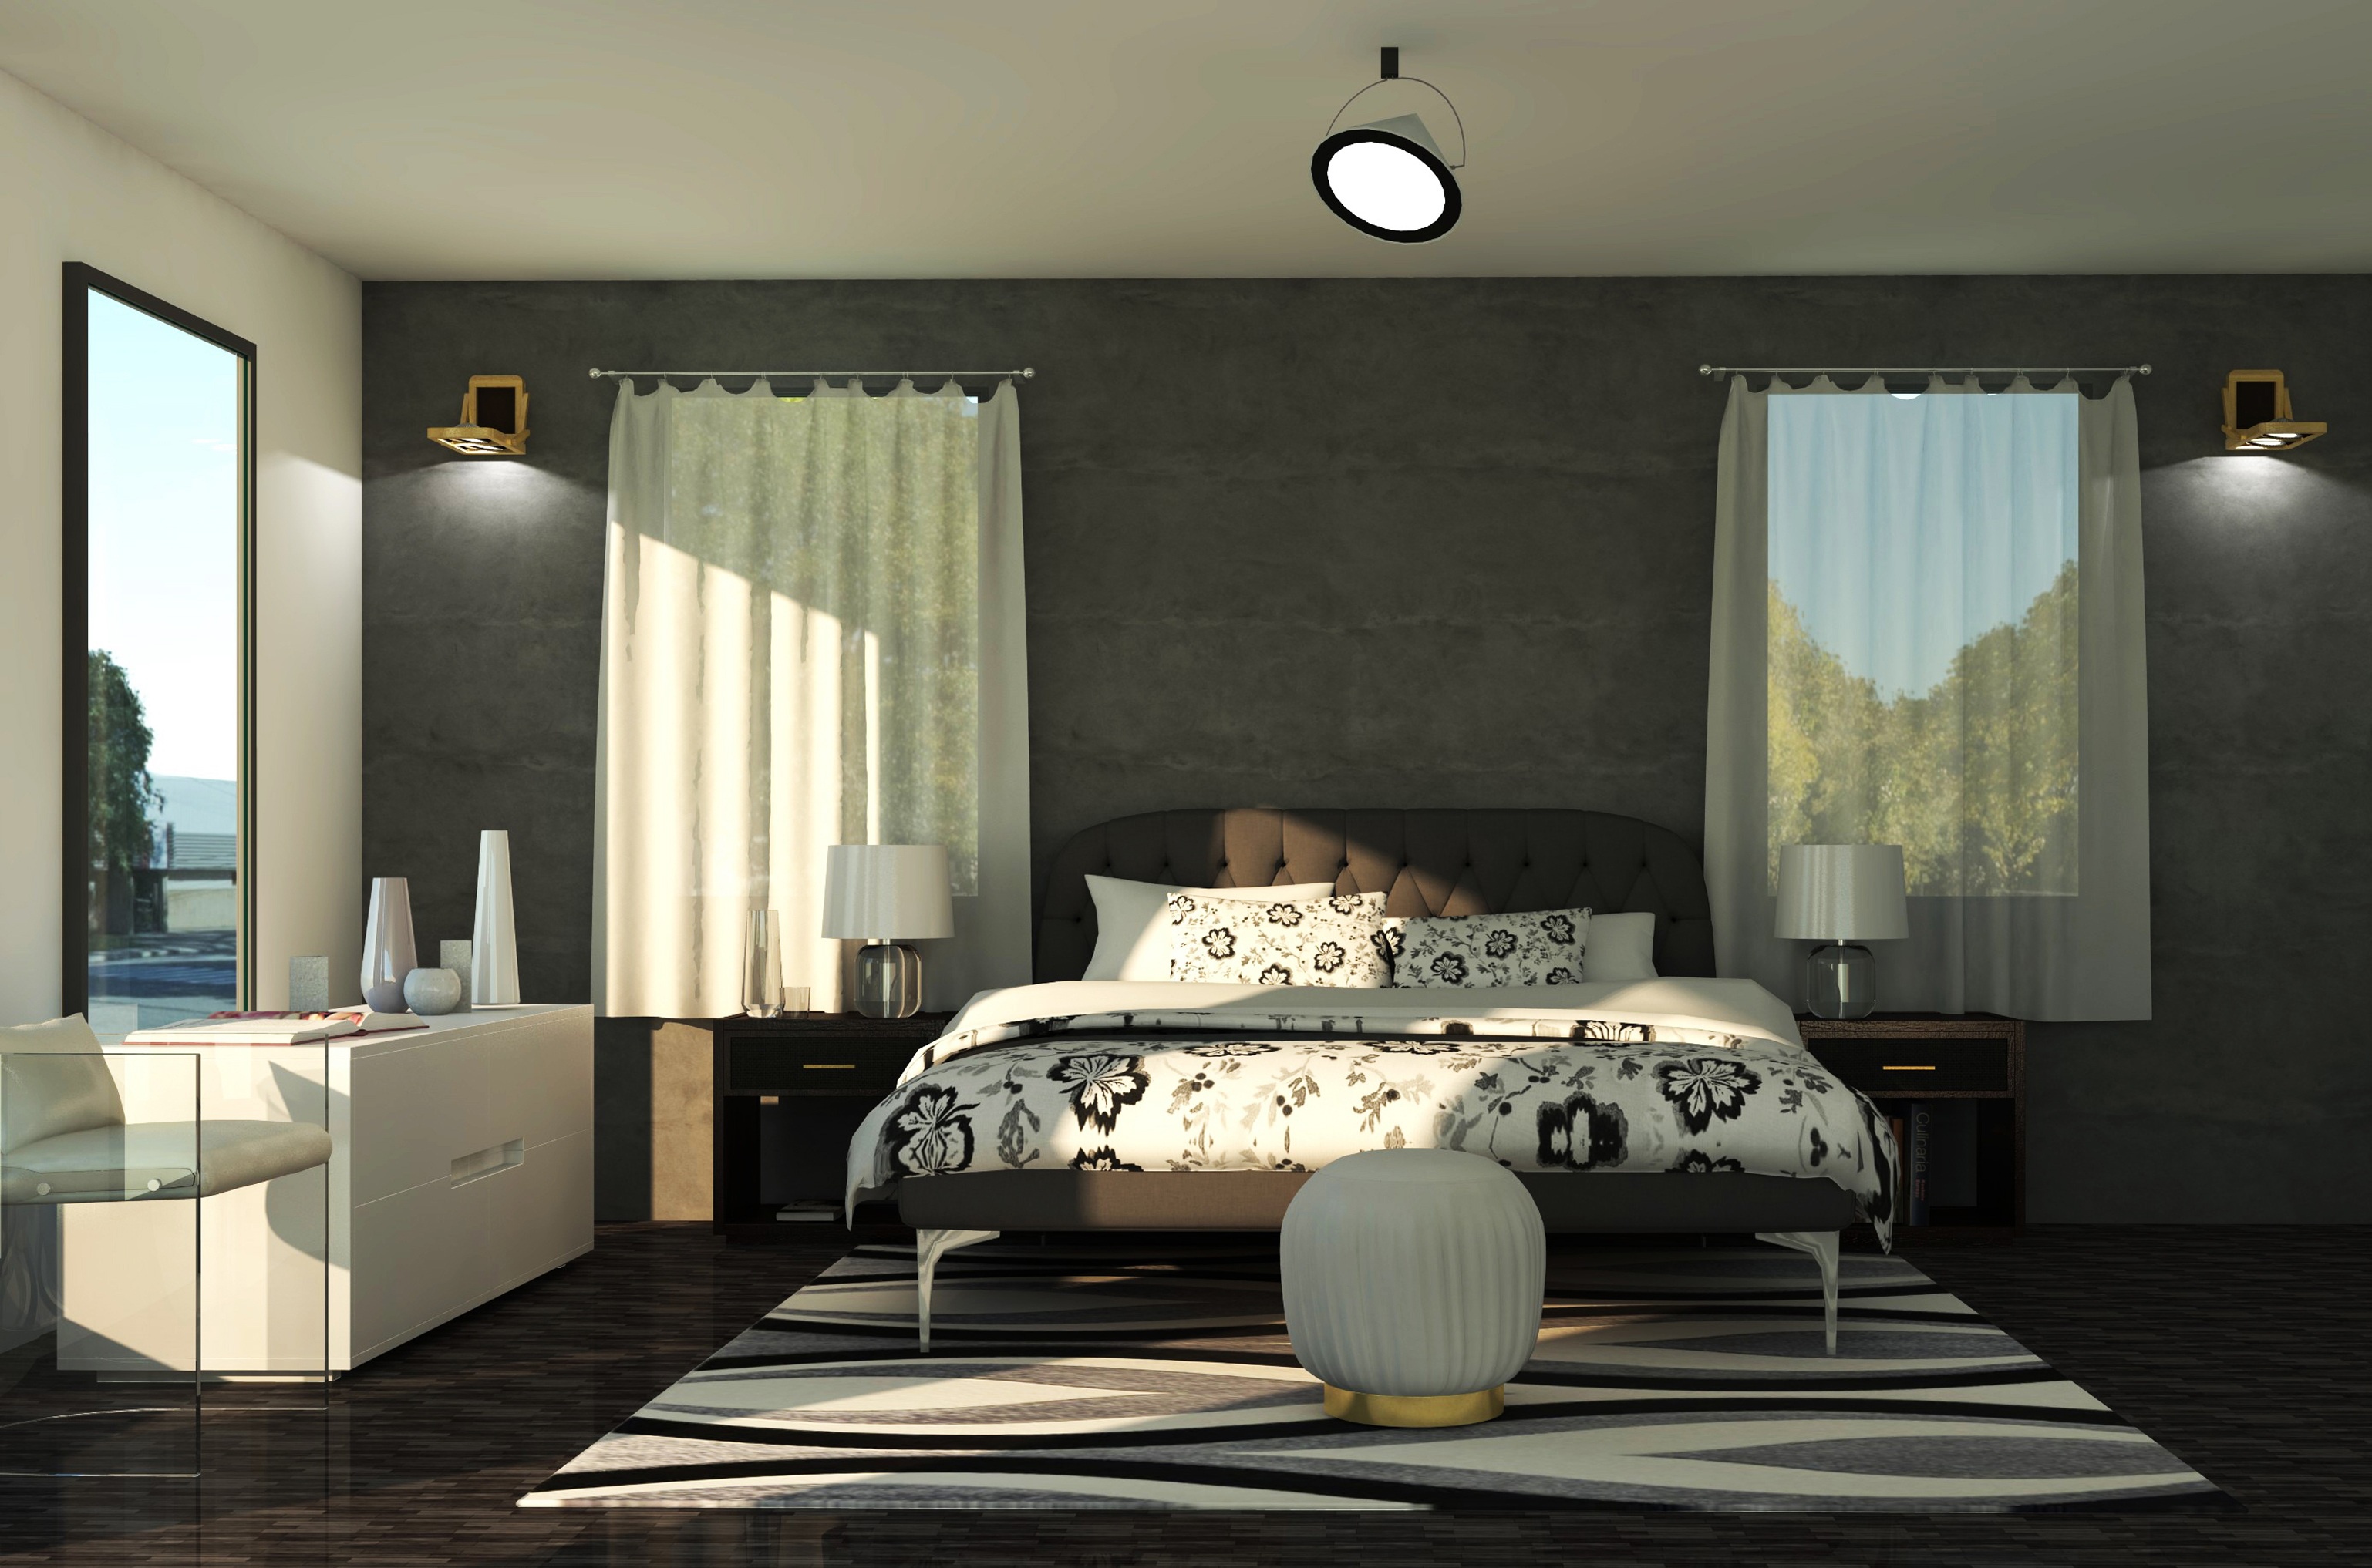 Bed Bedroom Interior Lamp 3076x2034